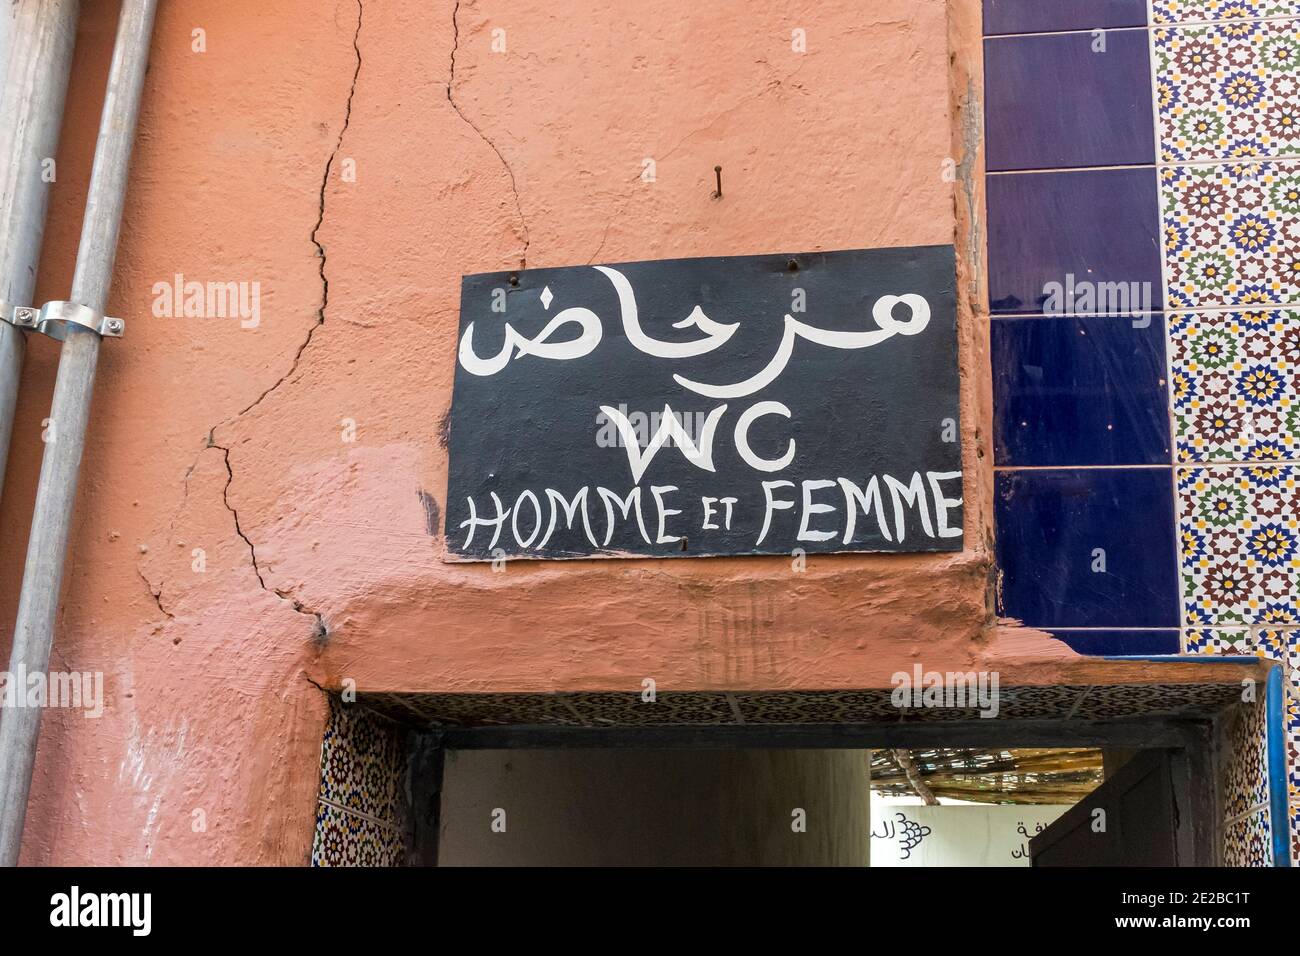 Signe pour une toilette publique écrit en arabe et en français, à Marrakech, Maroc Banque D'Images